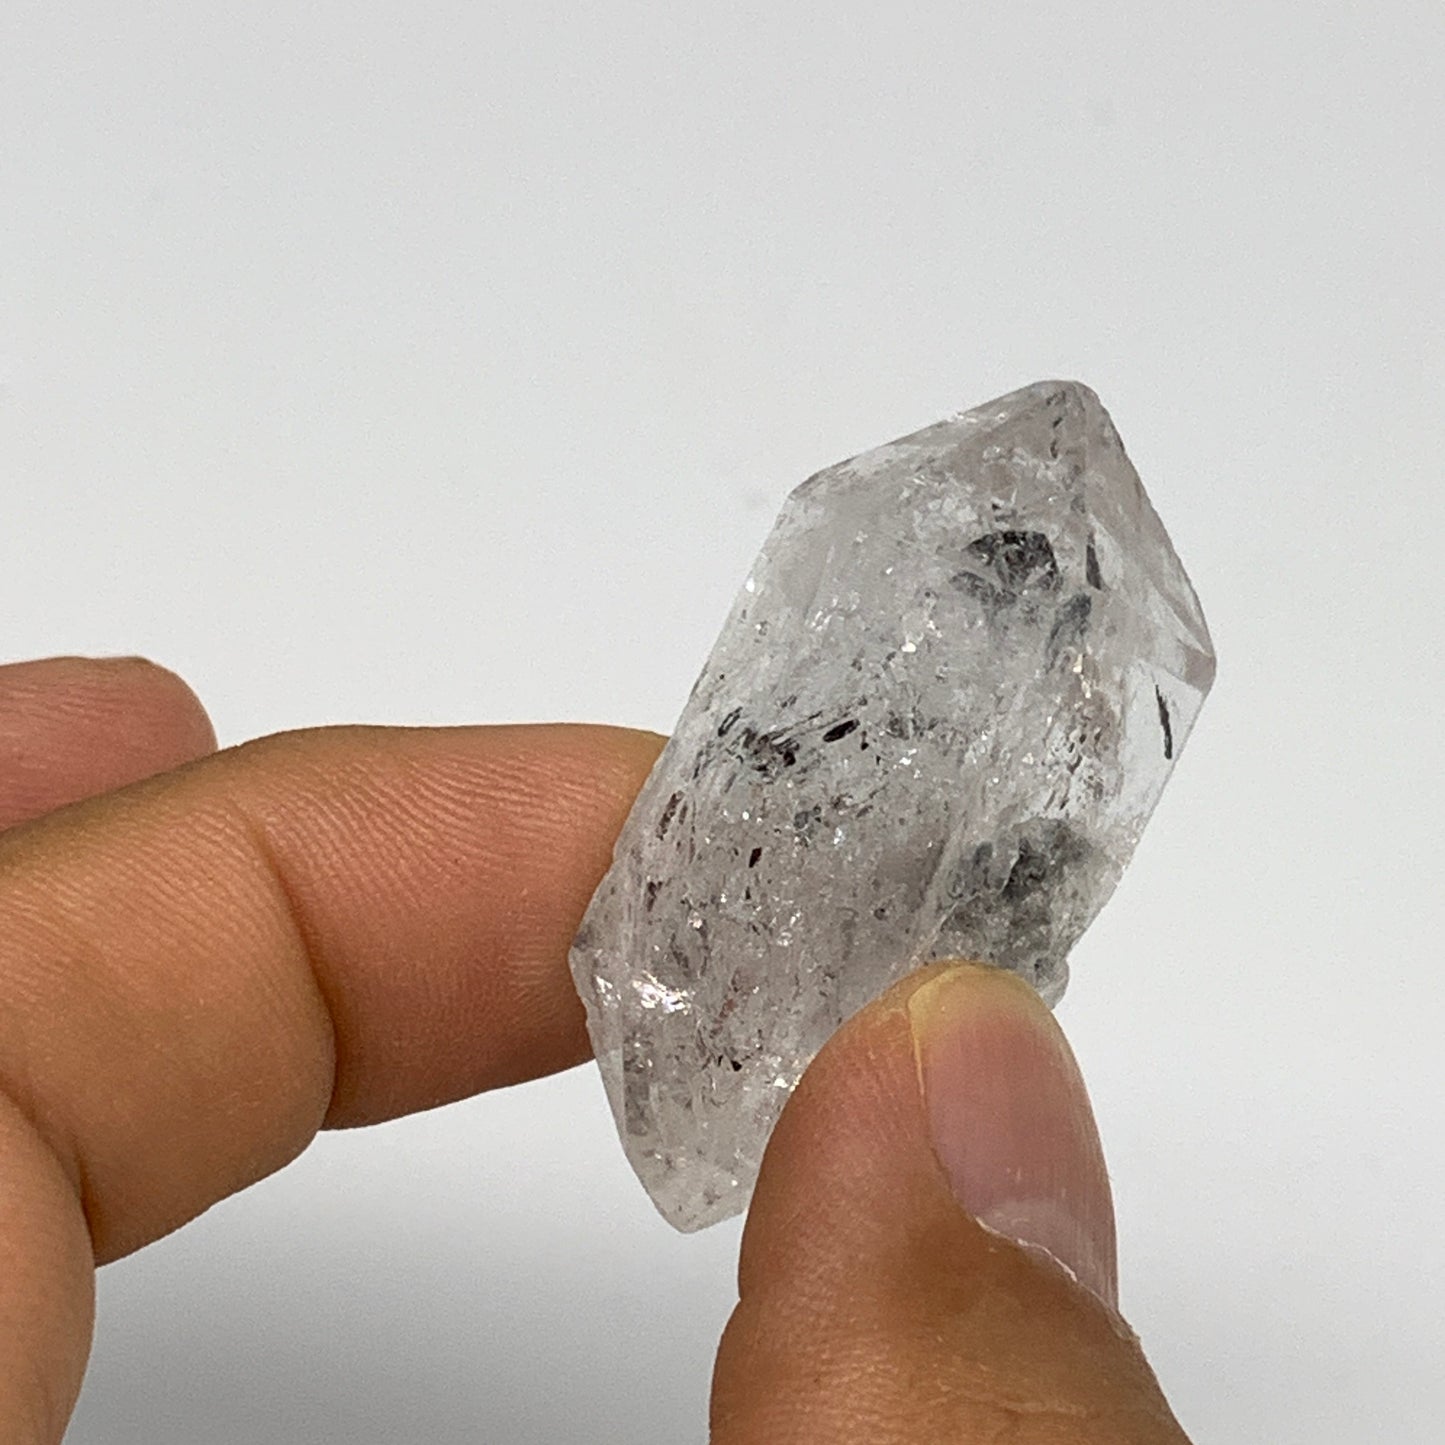 16.1g, 1.5"x0.8"x0.5", Natural Window Quartz Crystal Terminated @Pakistan,B27526